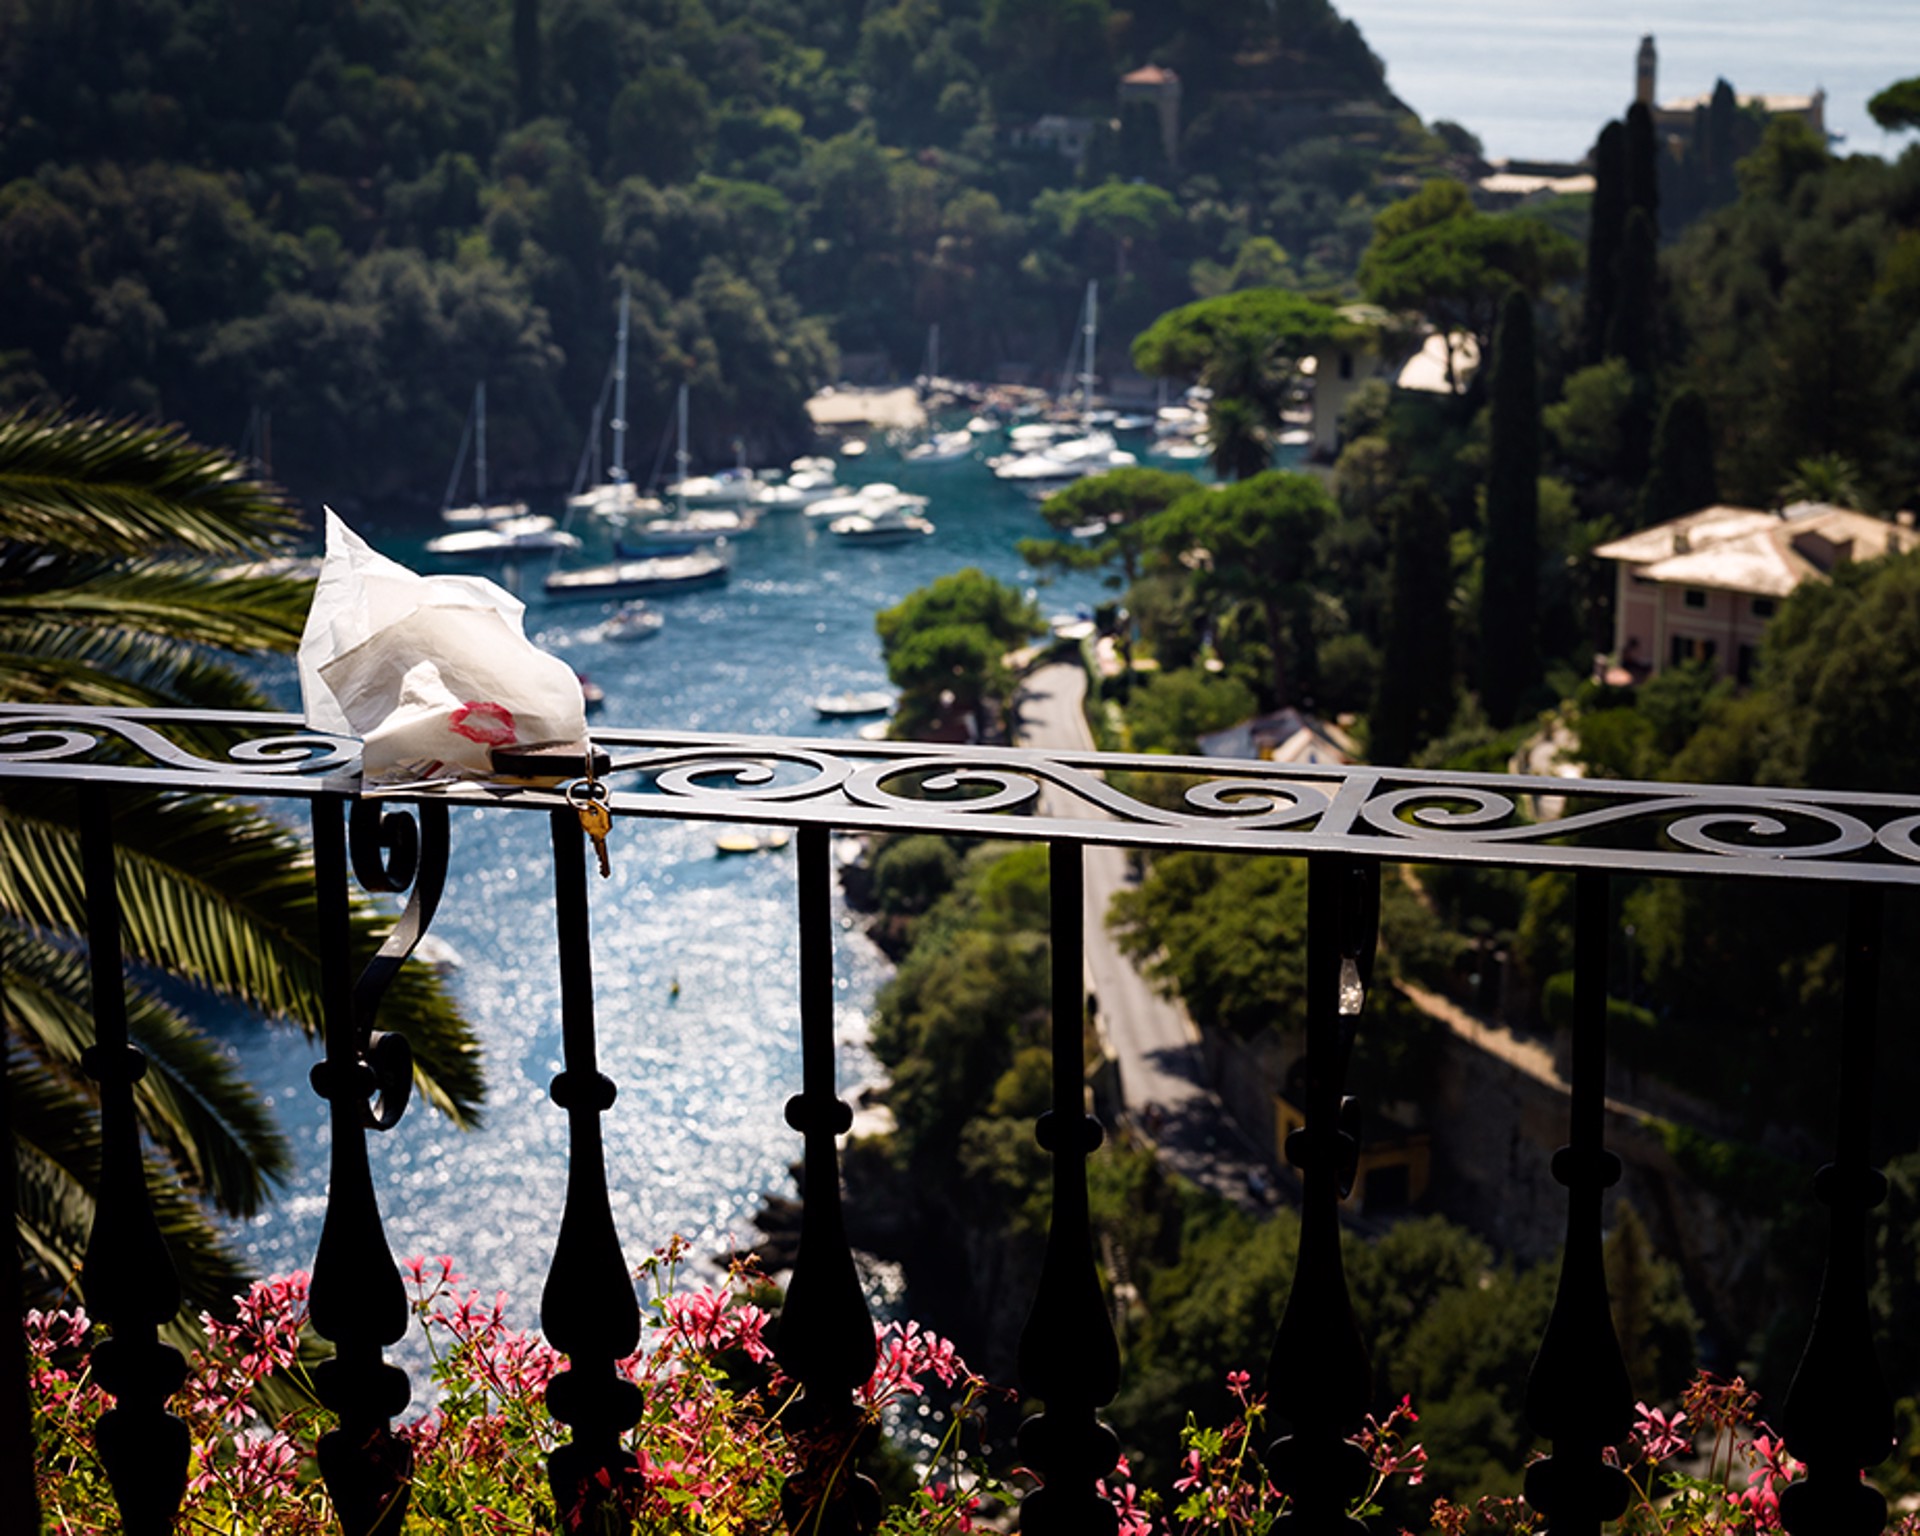 Italian Balcony by David Drebin